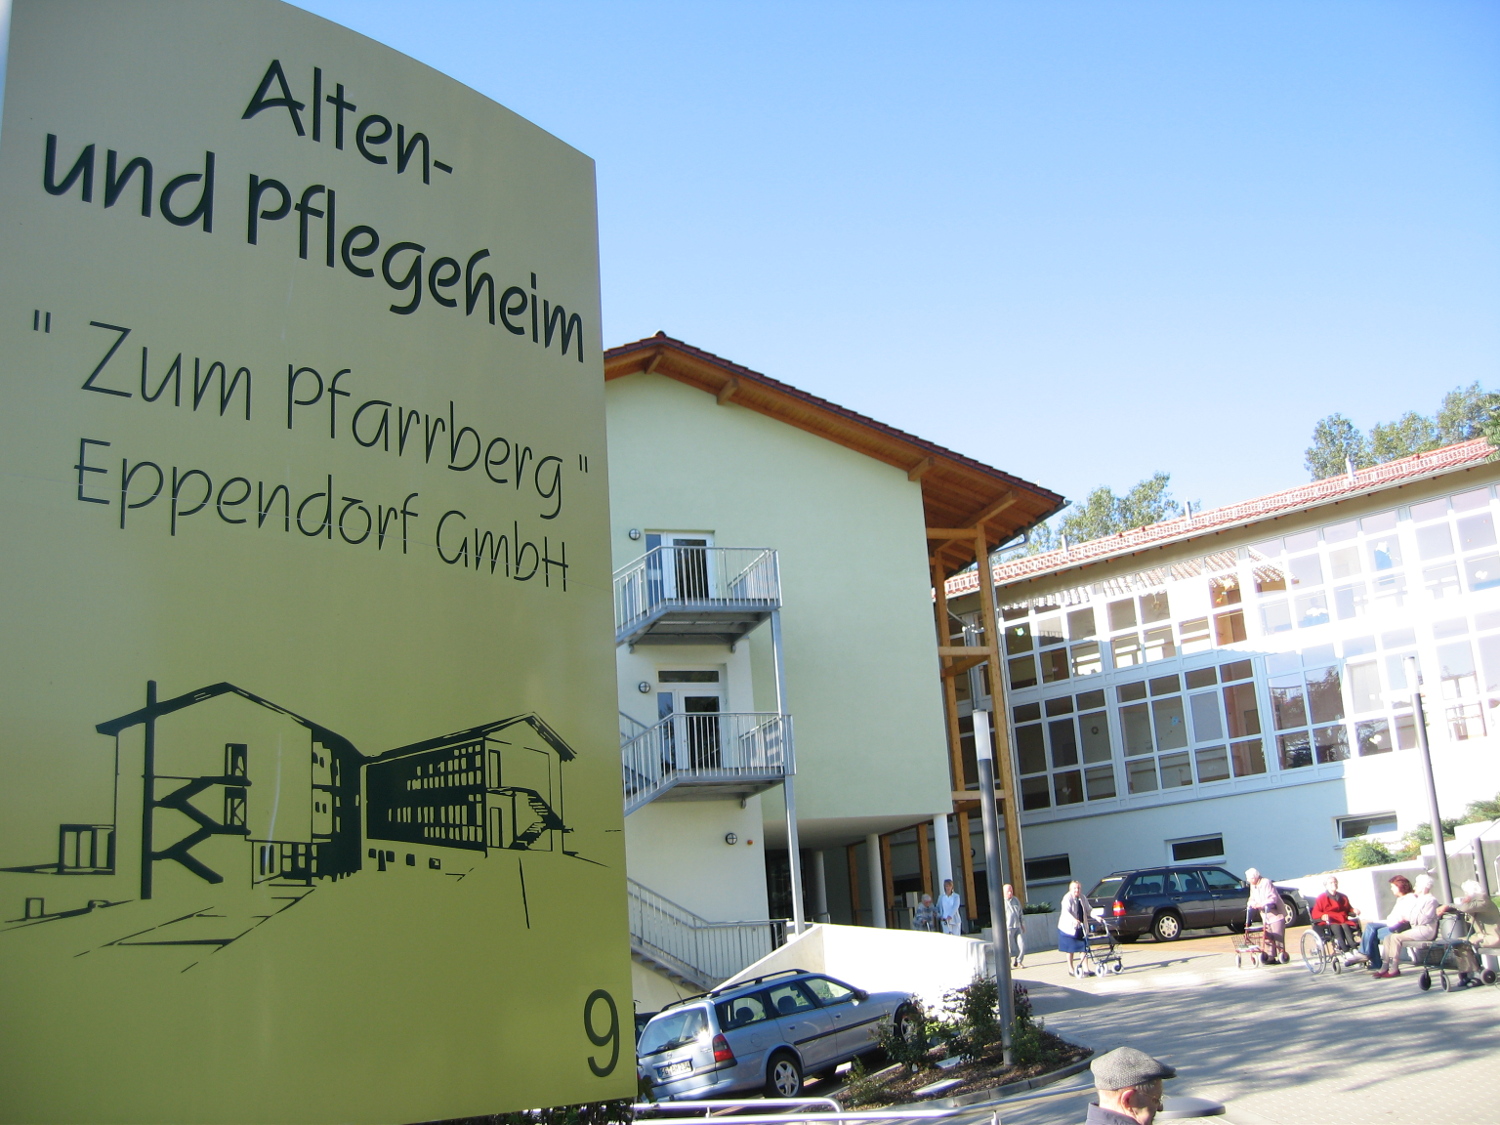 Alten- & Pflegeheim "Zum Pfarrberg" Eppendorf GmbH